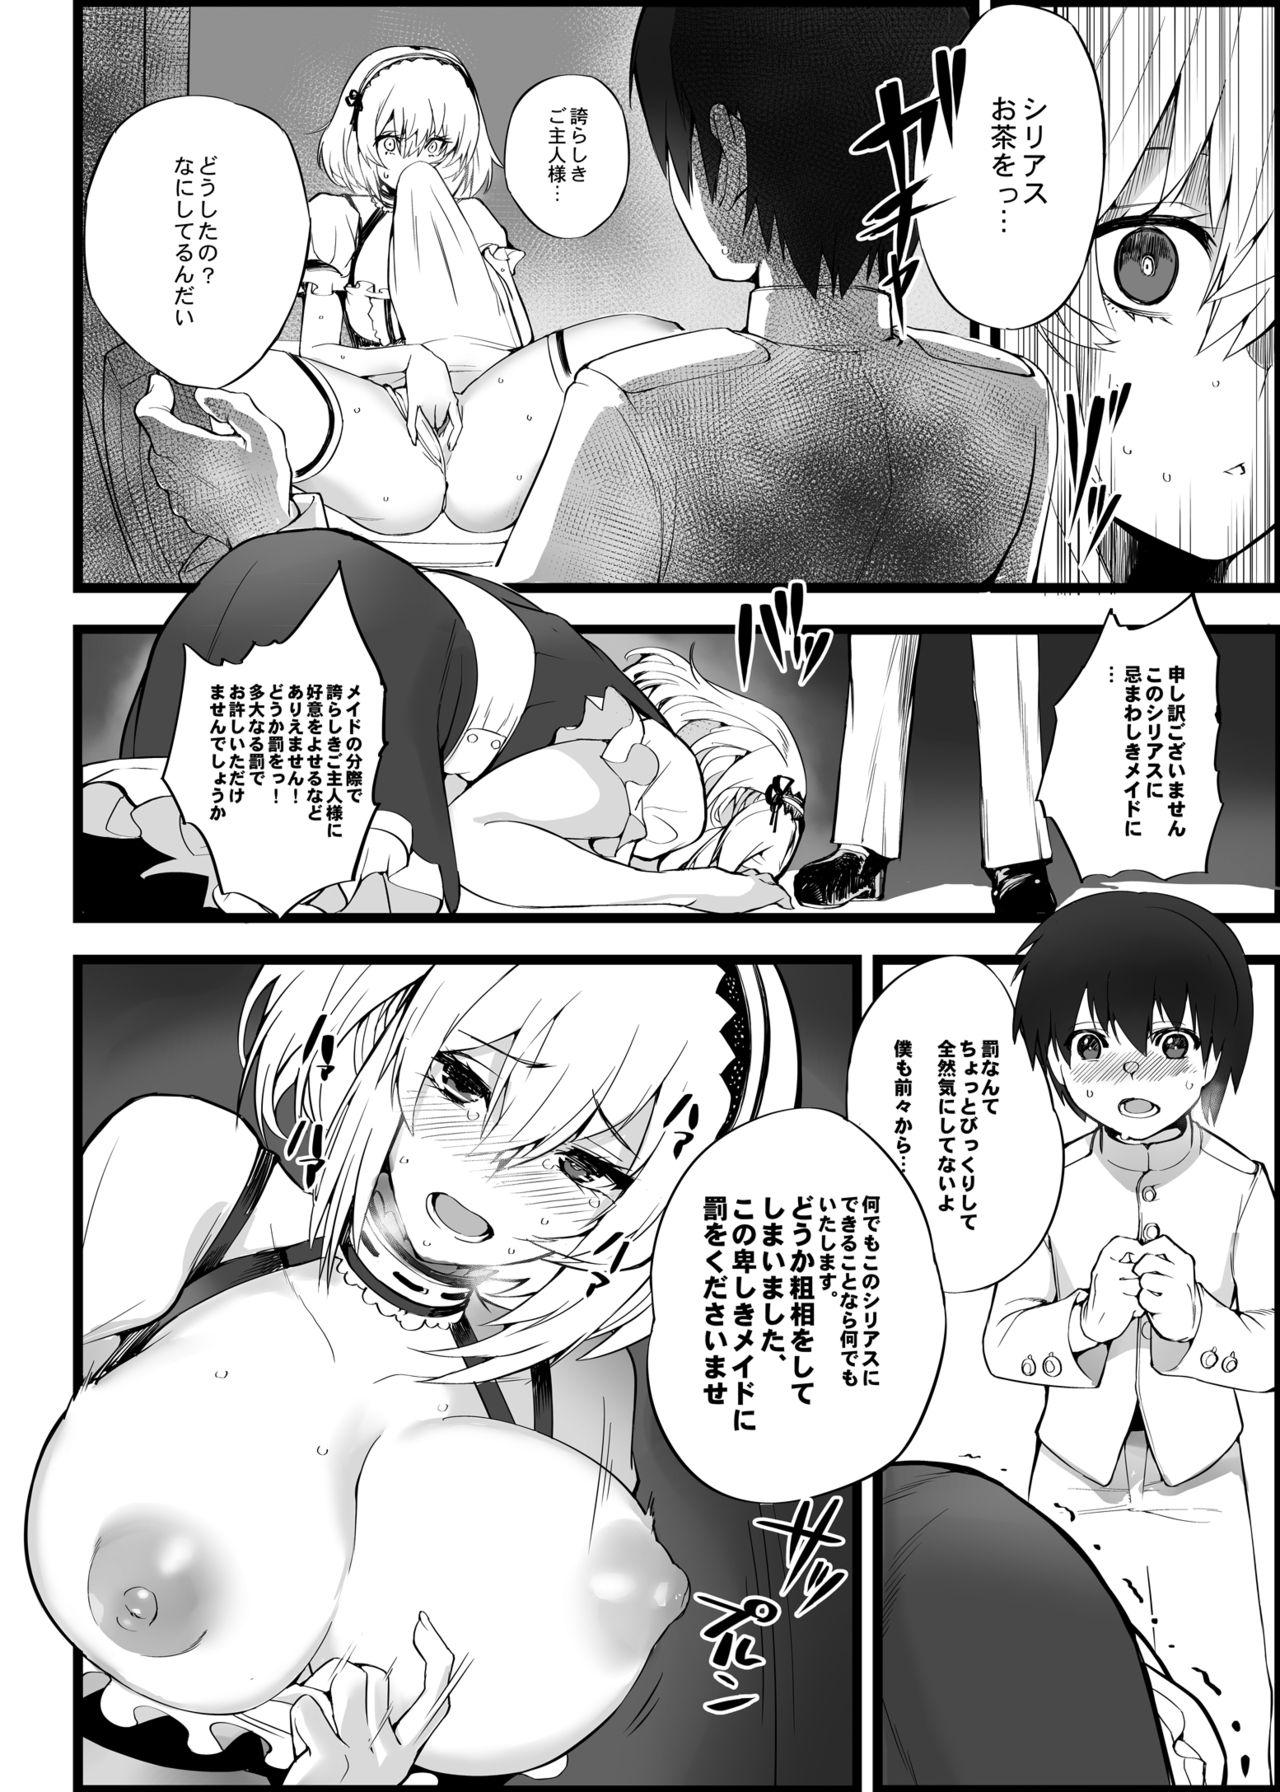 Gay Averagedick Mukakin Shirei ni Yubiwa o Kawaseru Saigo no Houhou 5 - Azur lane Classy - Page 5